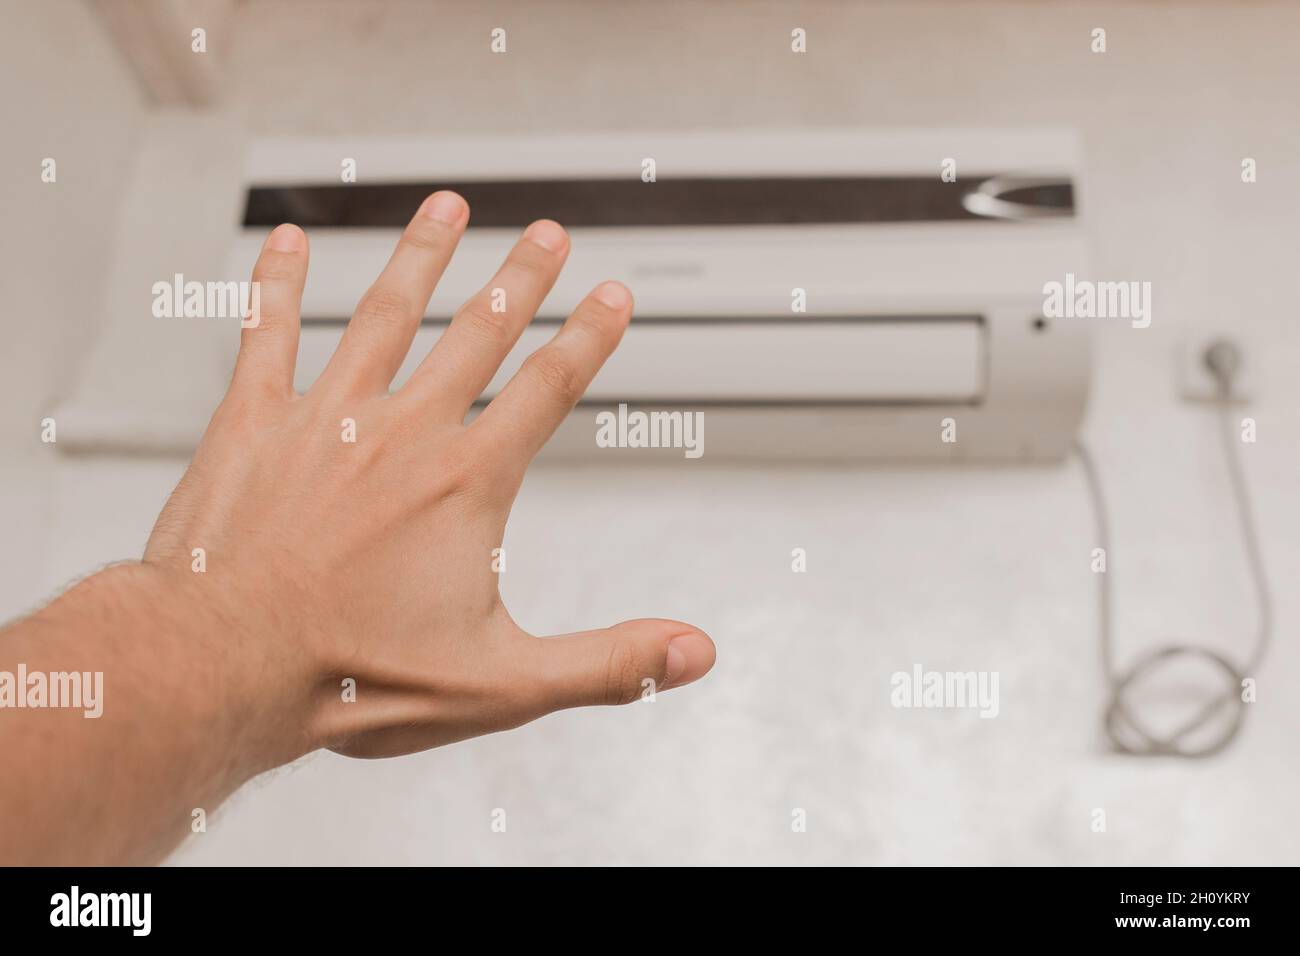 Der Typ legt seine Hand unter die Klimaanlage im Zimmer, um die Temperatur und das Gefühl von warmer oder kalter Luft zu überprüfen. Stockfoto